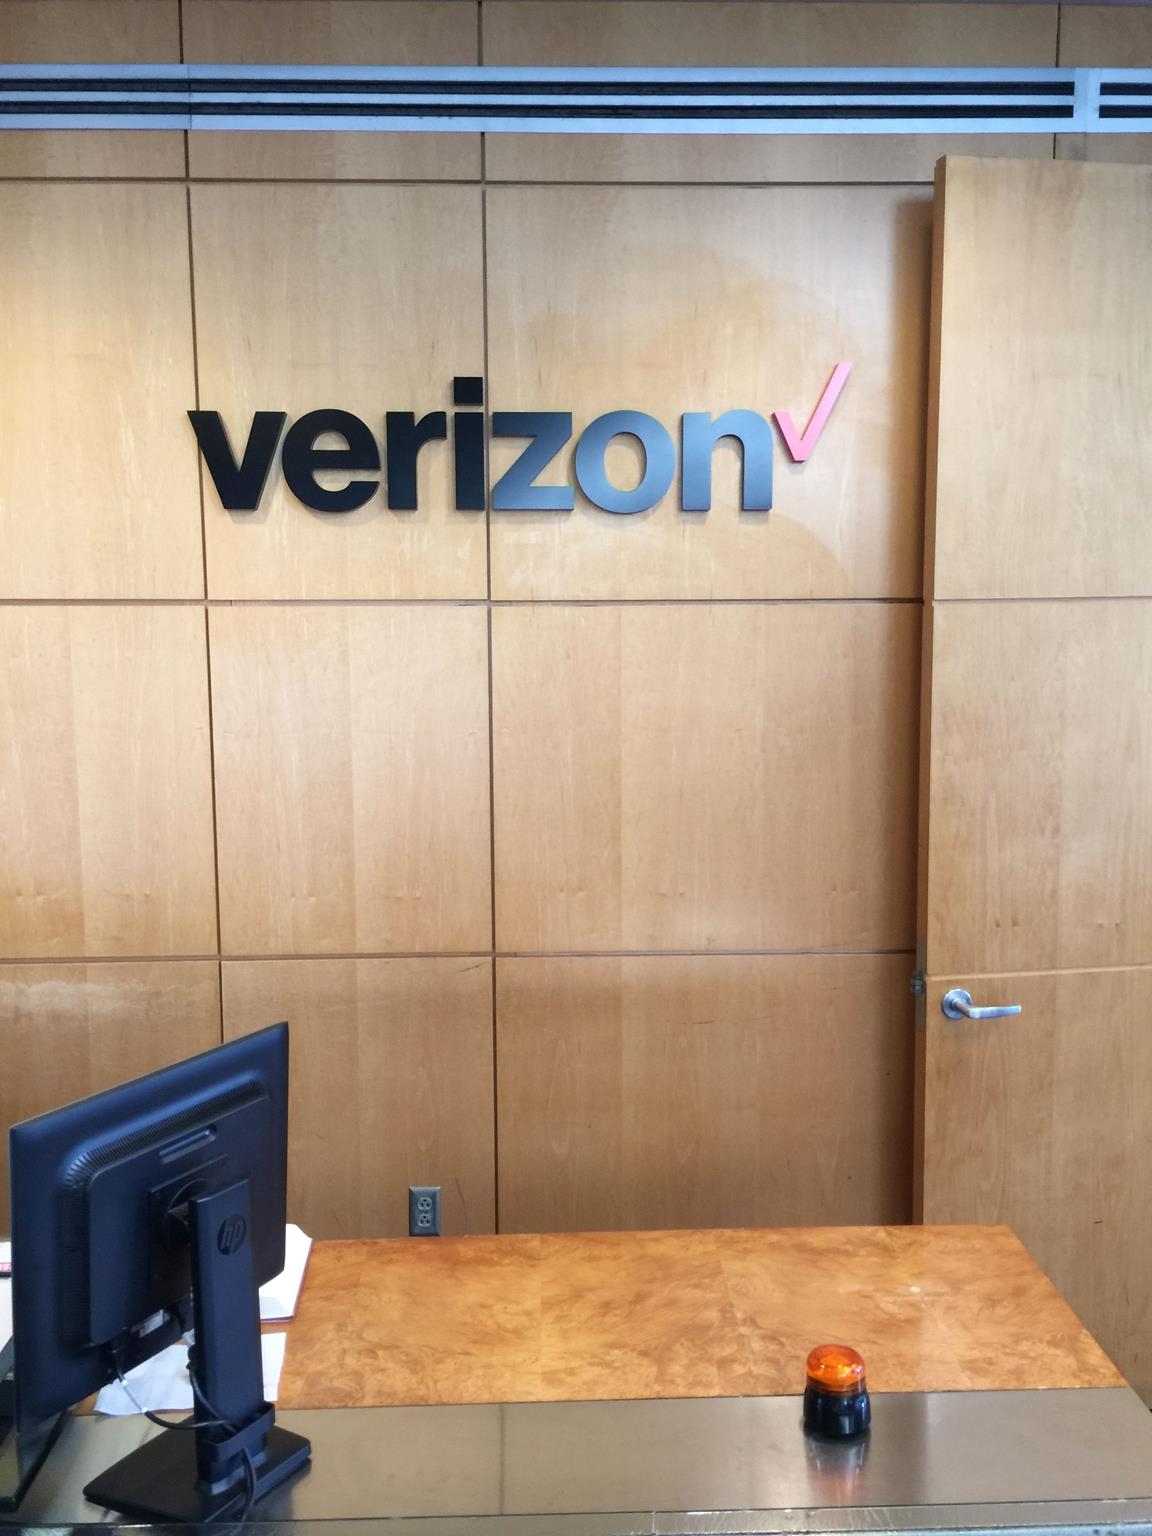 Verizon Letters in Office Cabin